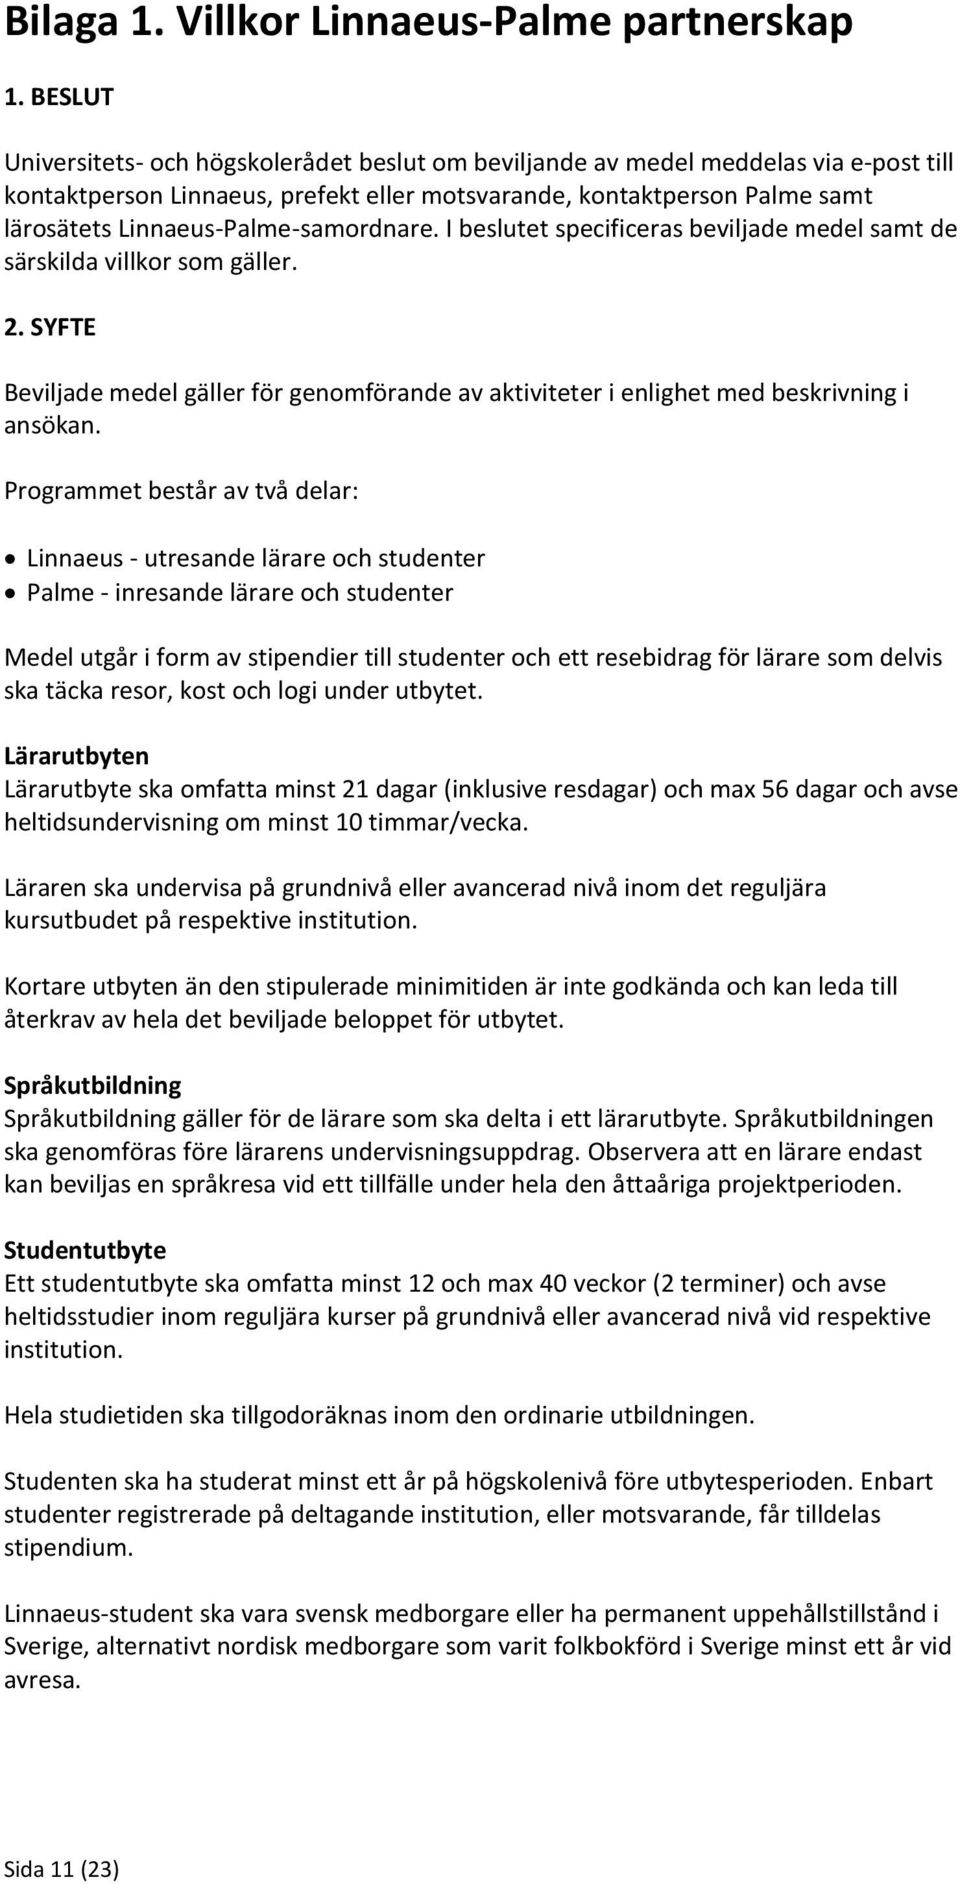 Handbok för projektansökan. Linnaeus-Palme partnerskap PDF Gratis ...